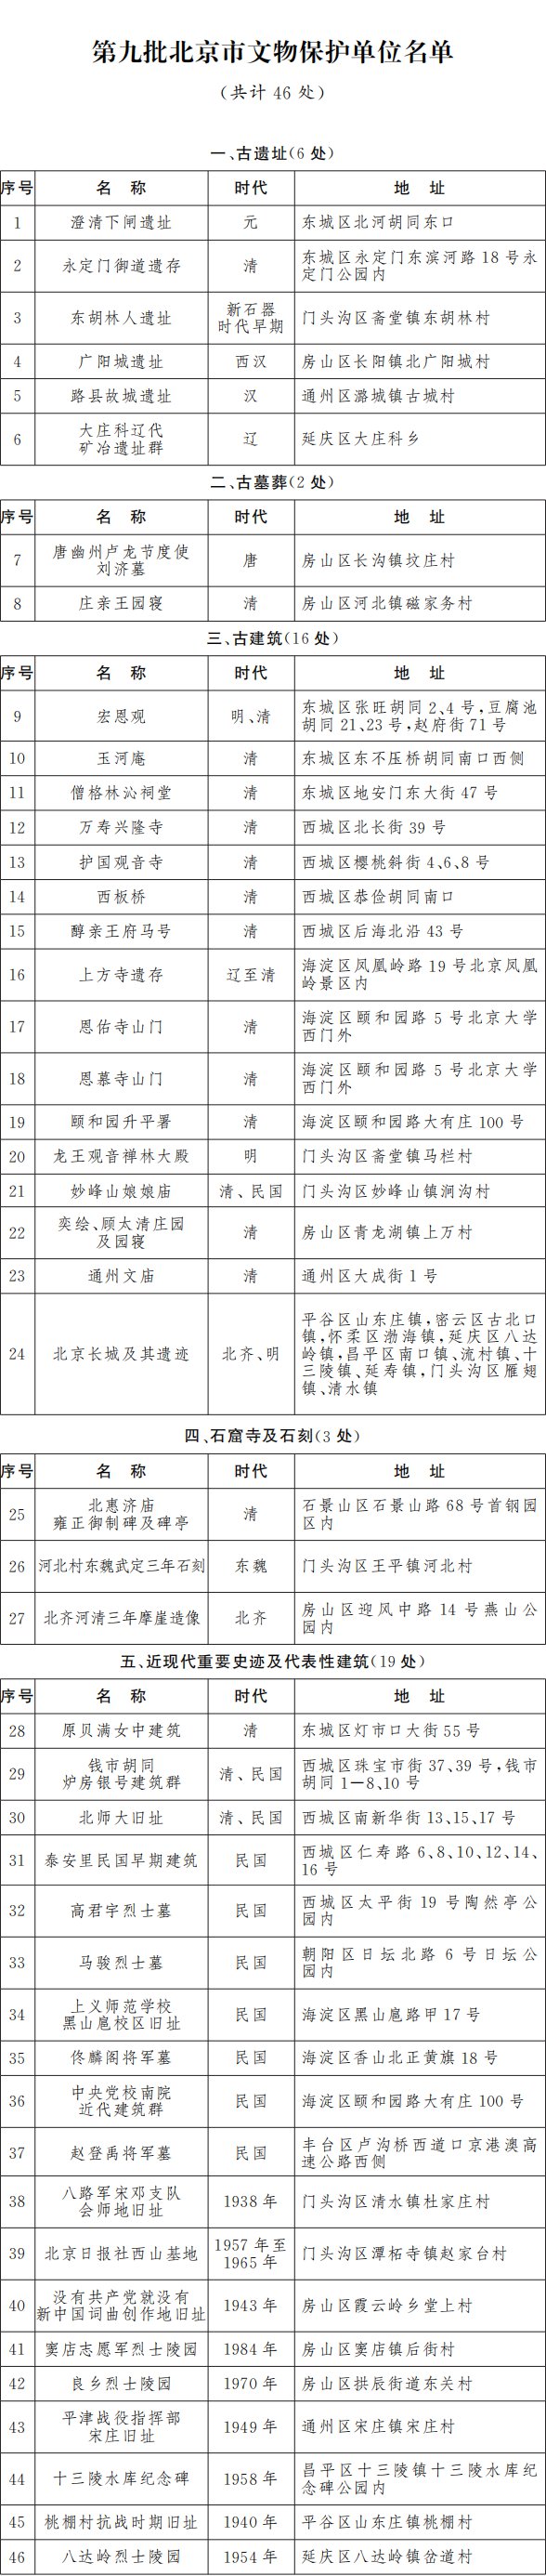 第九批北京市文保单位名单公布